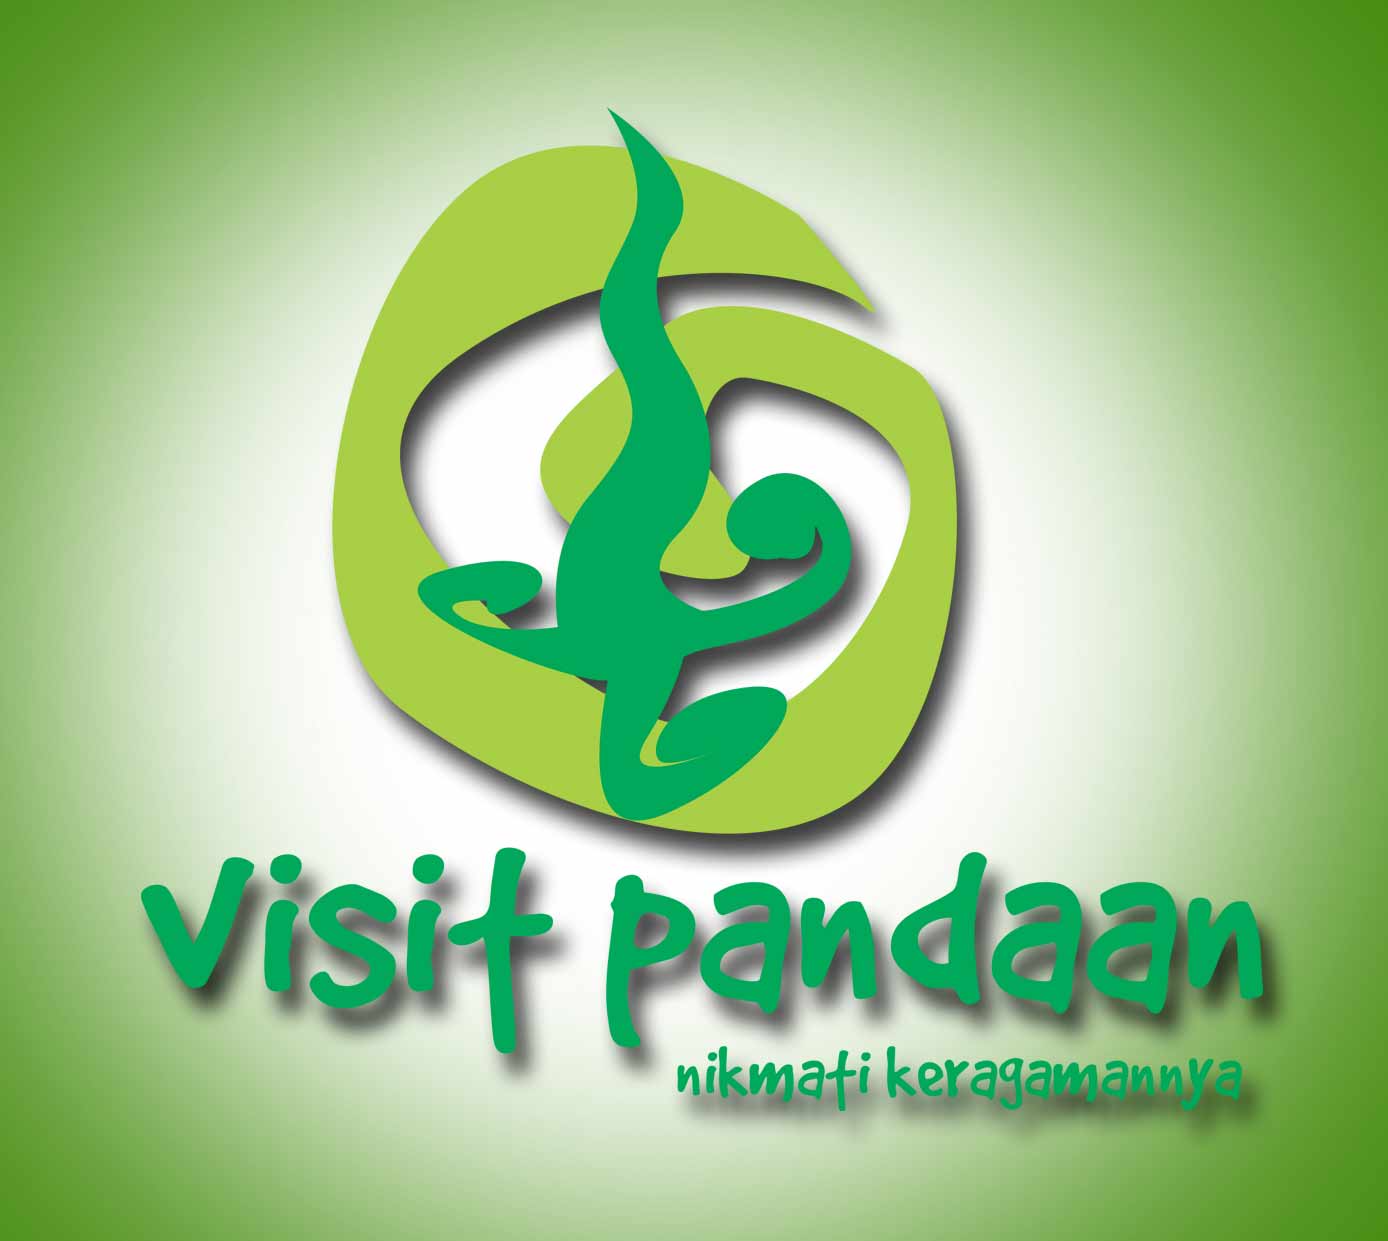 http://visitpandaan.files.wordpress.com/2010/03/logo2.jpg